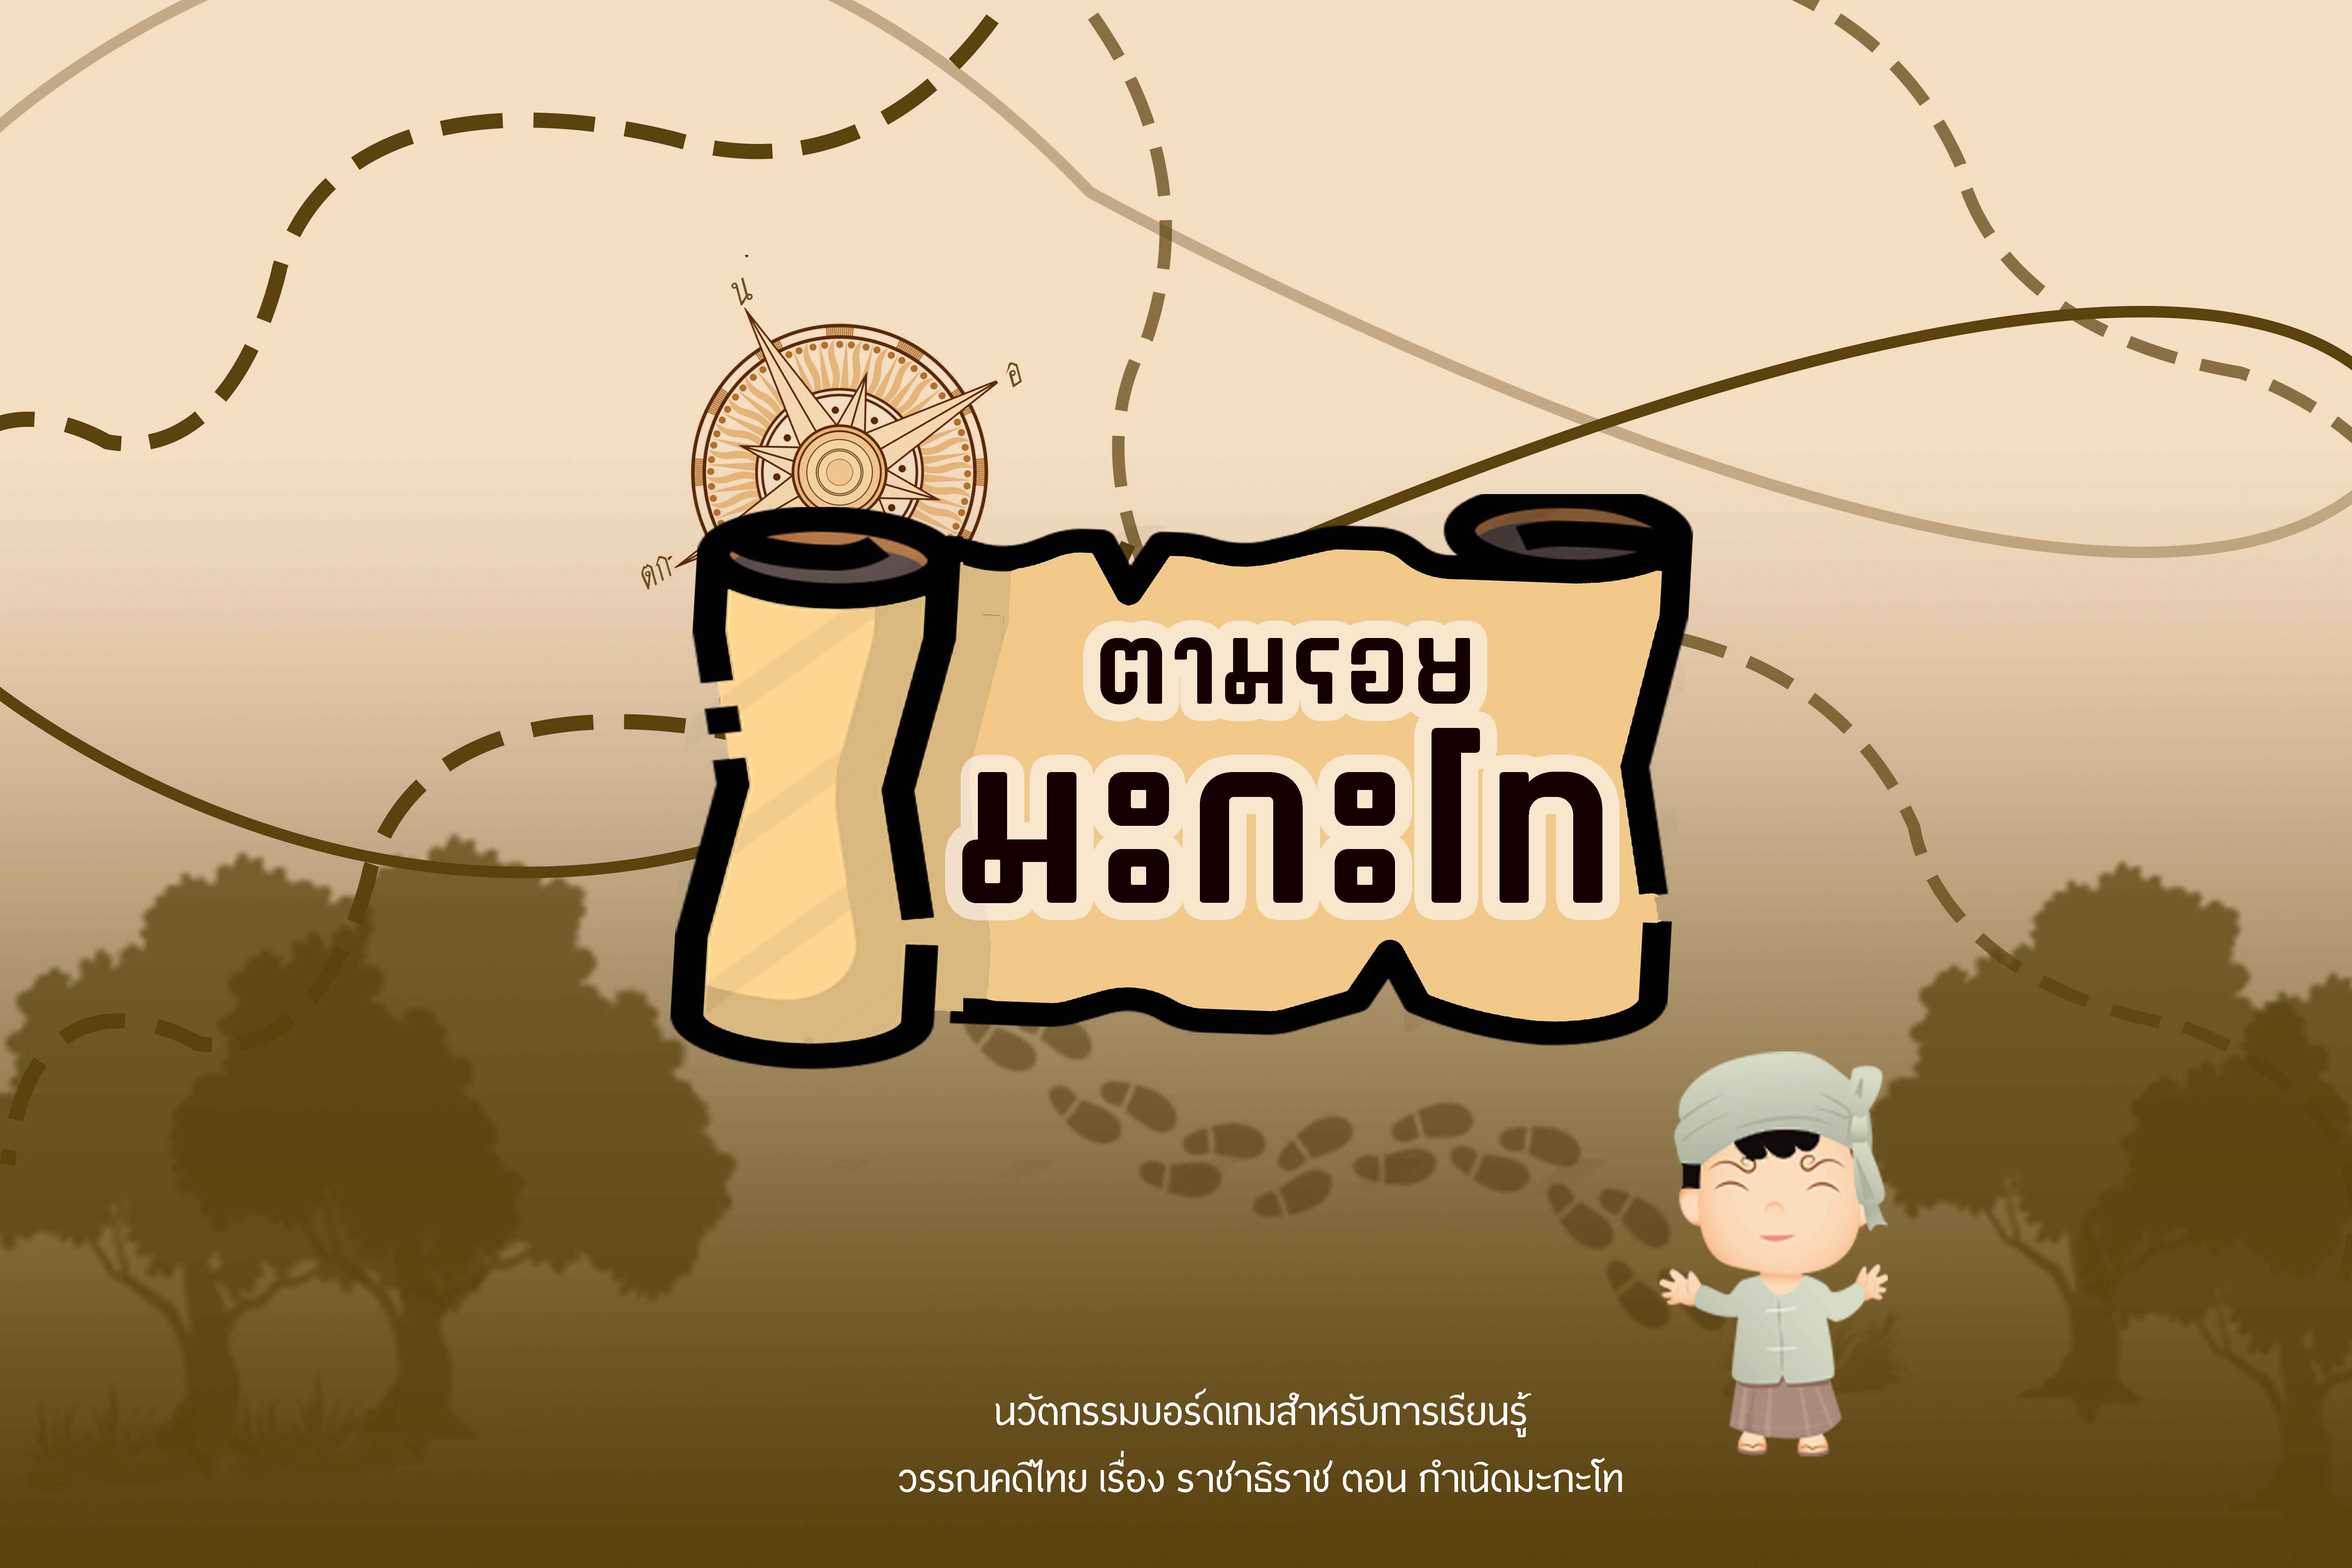 ภาพประกอบไอเดีย บอร์ดเกมภาษาไทย "ตามรอยมะกะโท"